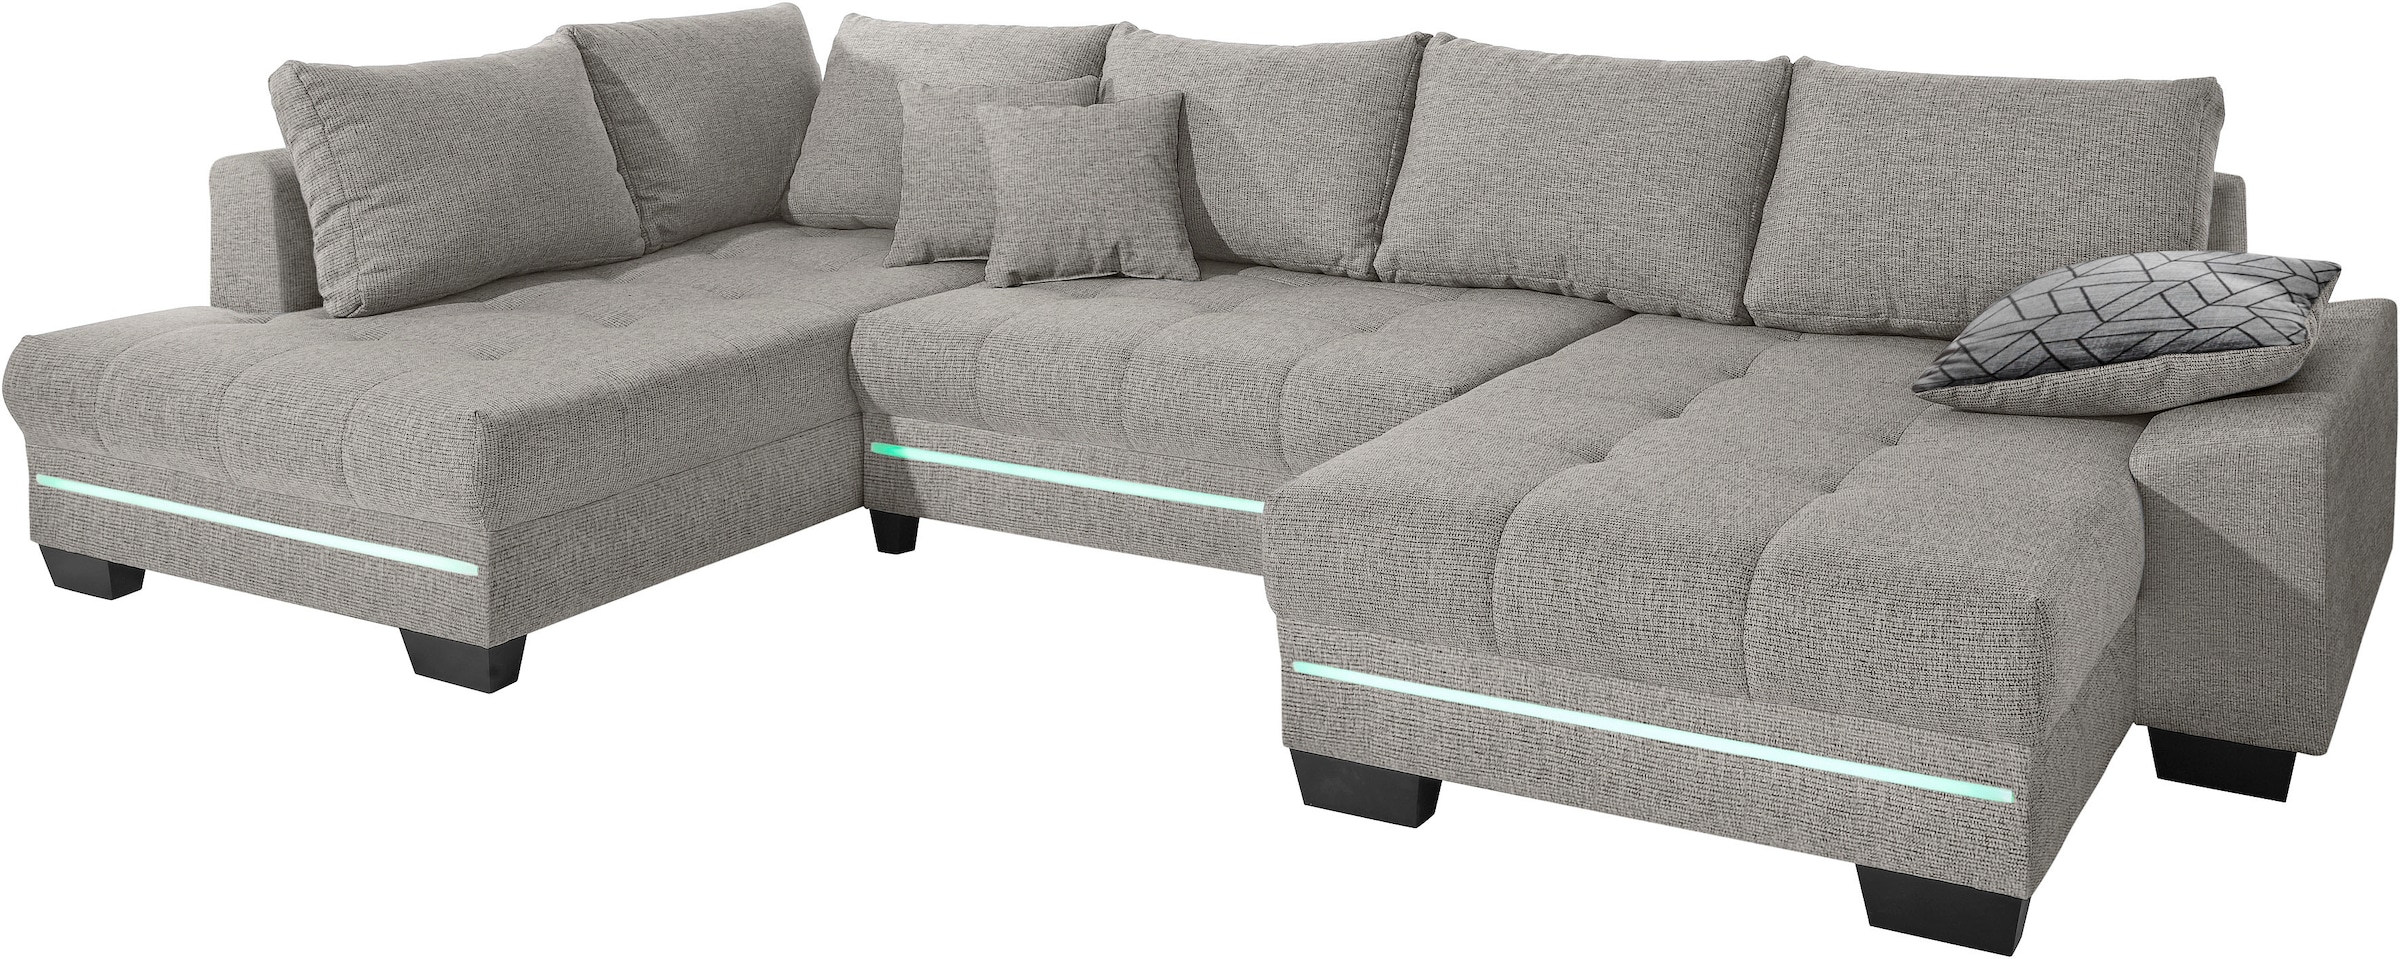 Mr. Couch Wohnlandschaft »Nikita U-Form«, Wahlweise mit Kaltschaum (140kg Belastung/Sitz), mit RGB-Beleuchtung